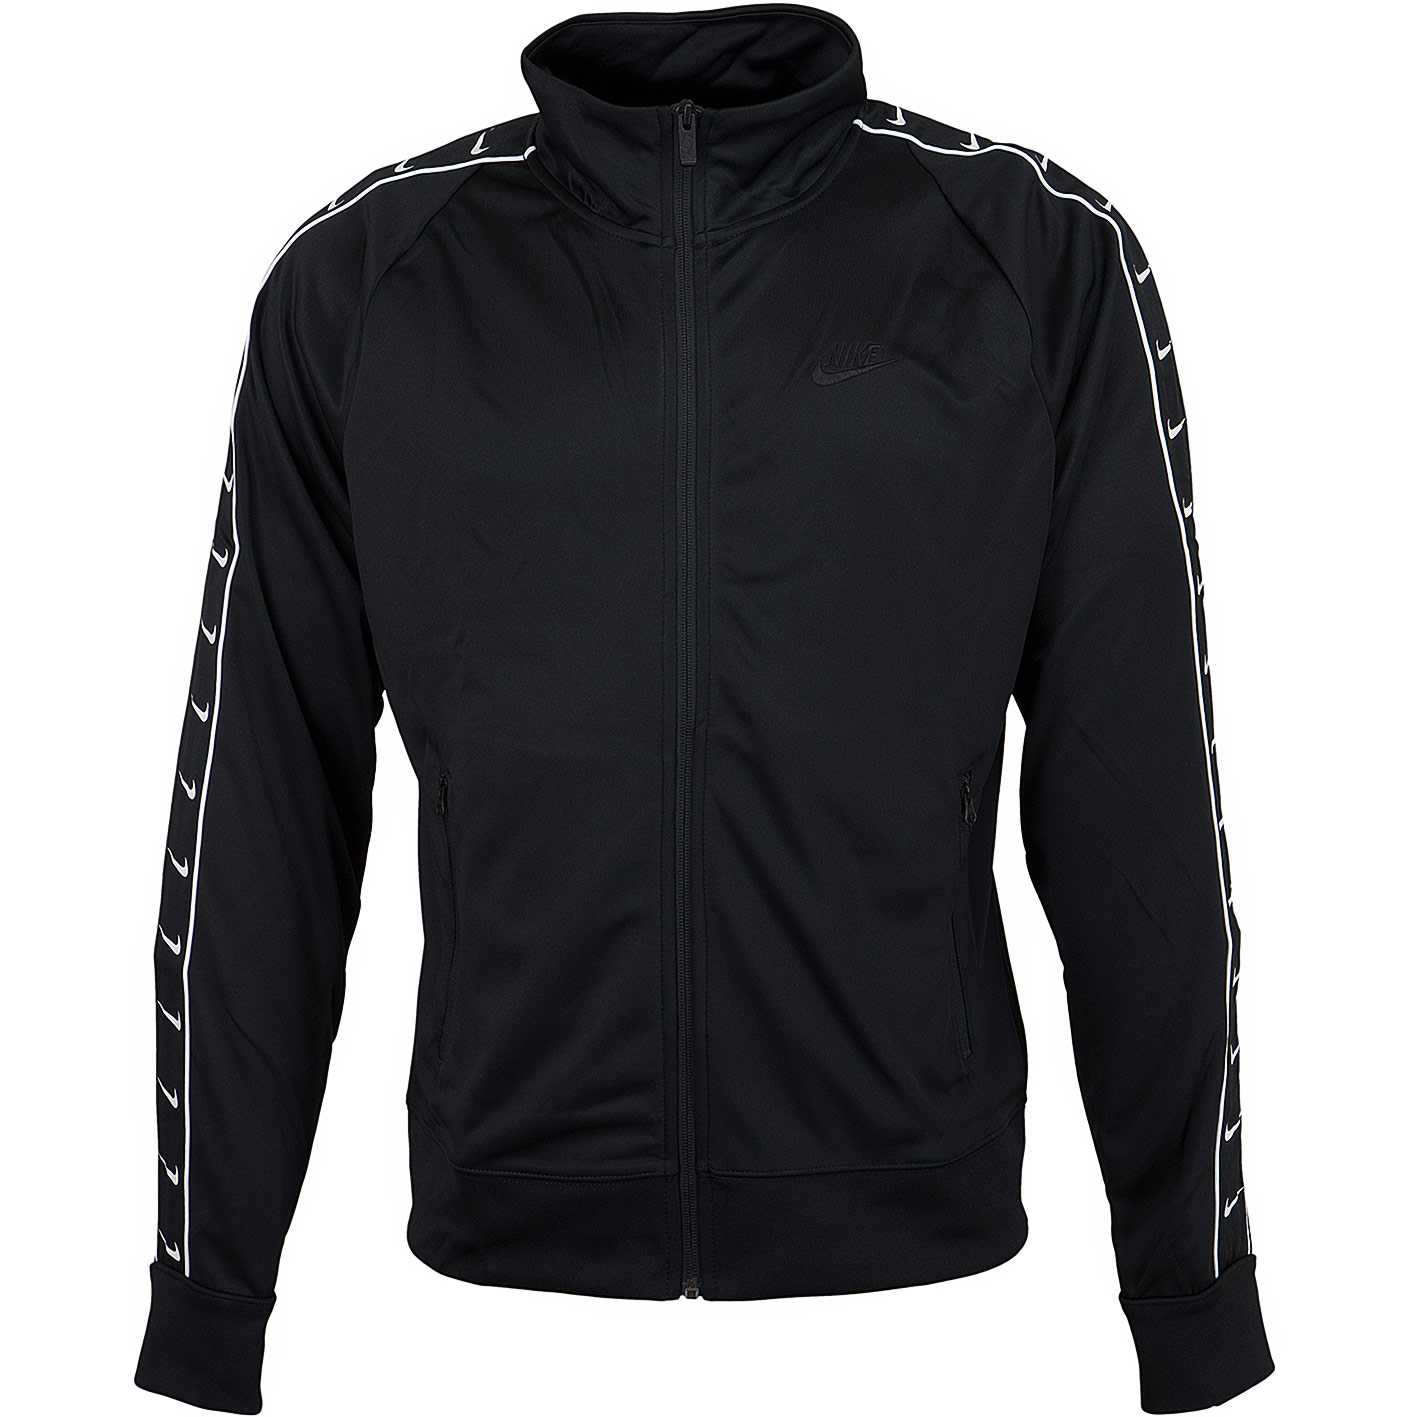 Nike Trainingsjacke HBR PK STMT schwarz/weiß - hier bestellen!